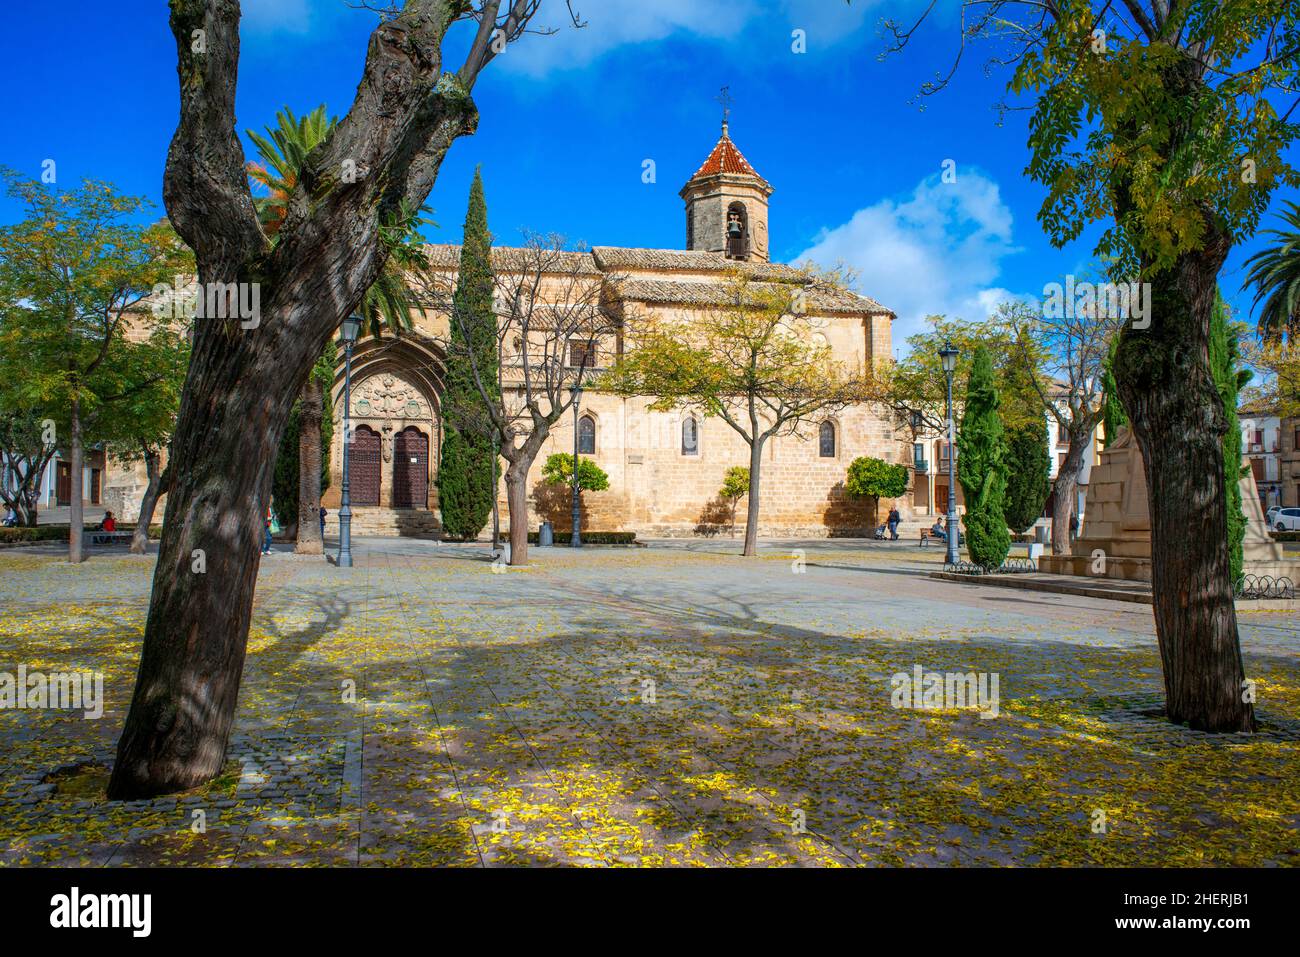 Iglesia de San Pablo church, Plaza del 1 de Mayo square Ubeda, Andalusia Jaen Province Spain Europe Stock Photo